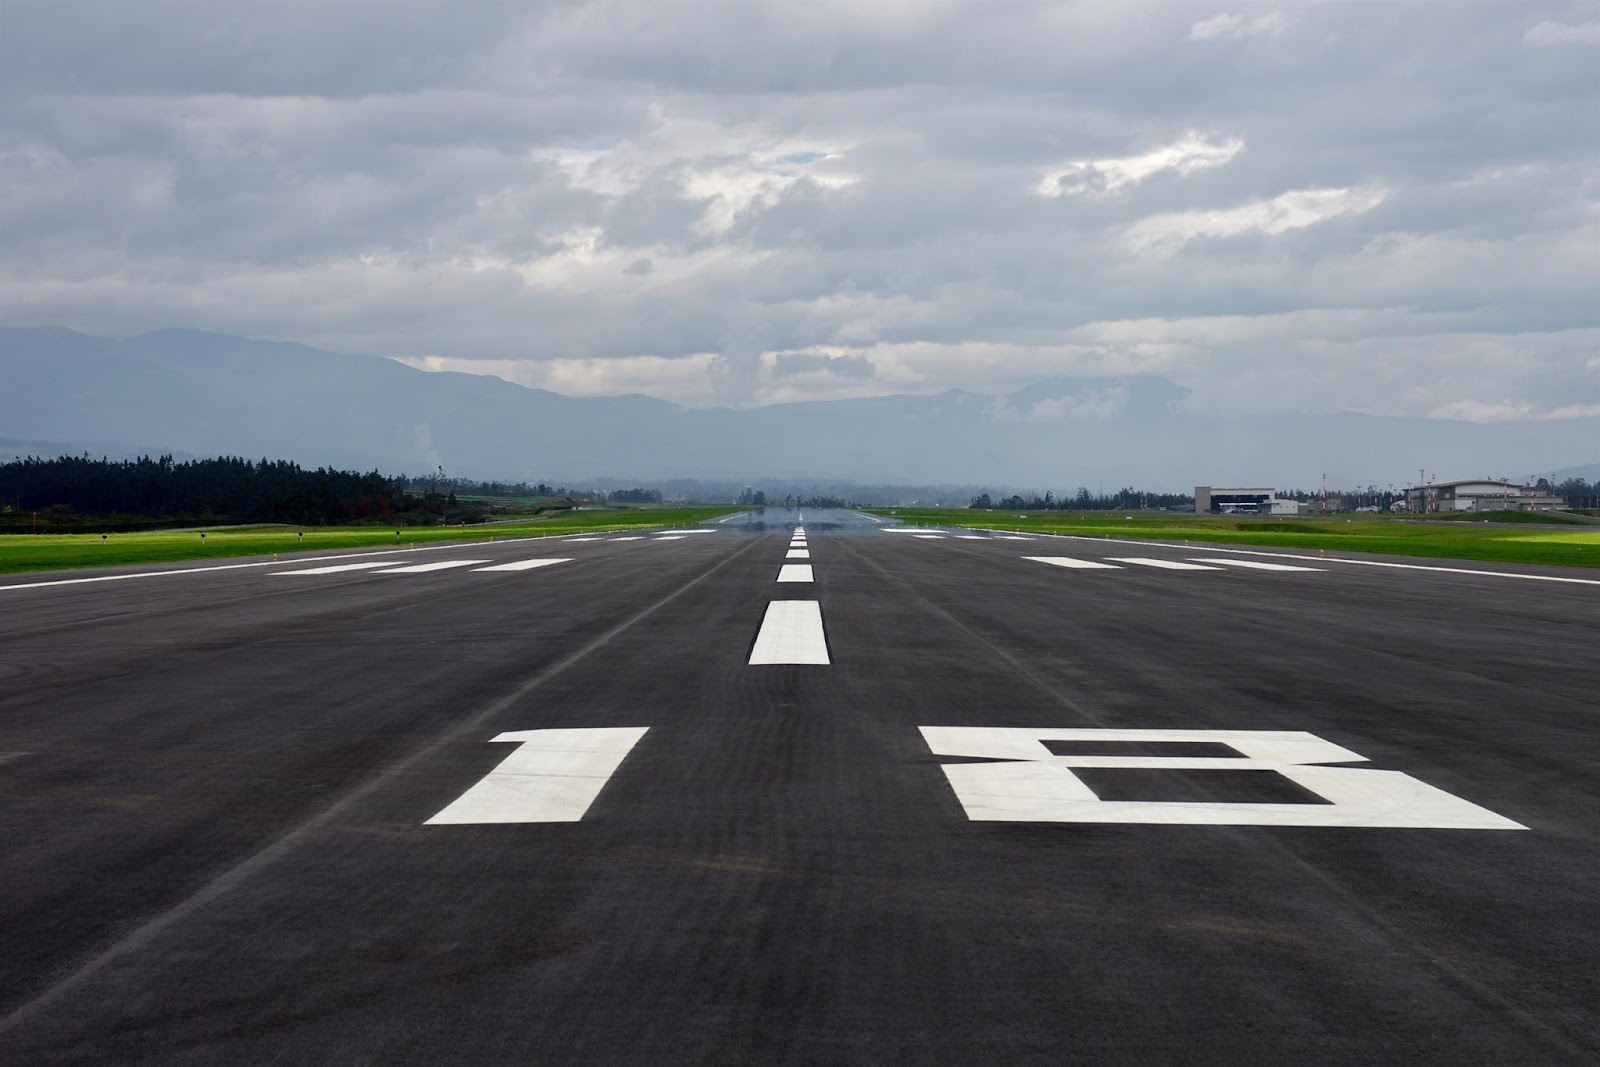 lax runway numbers